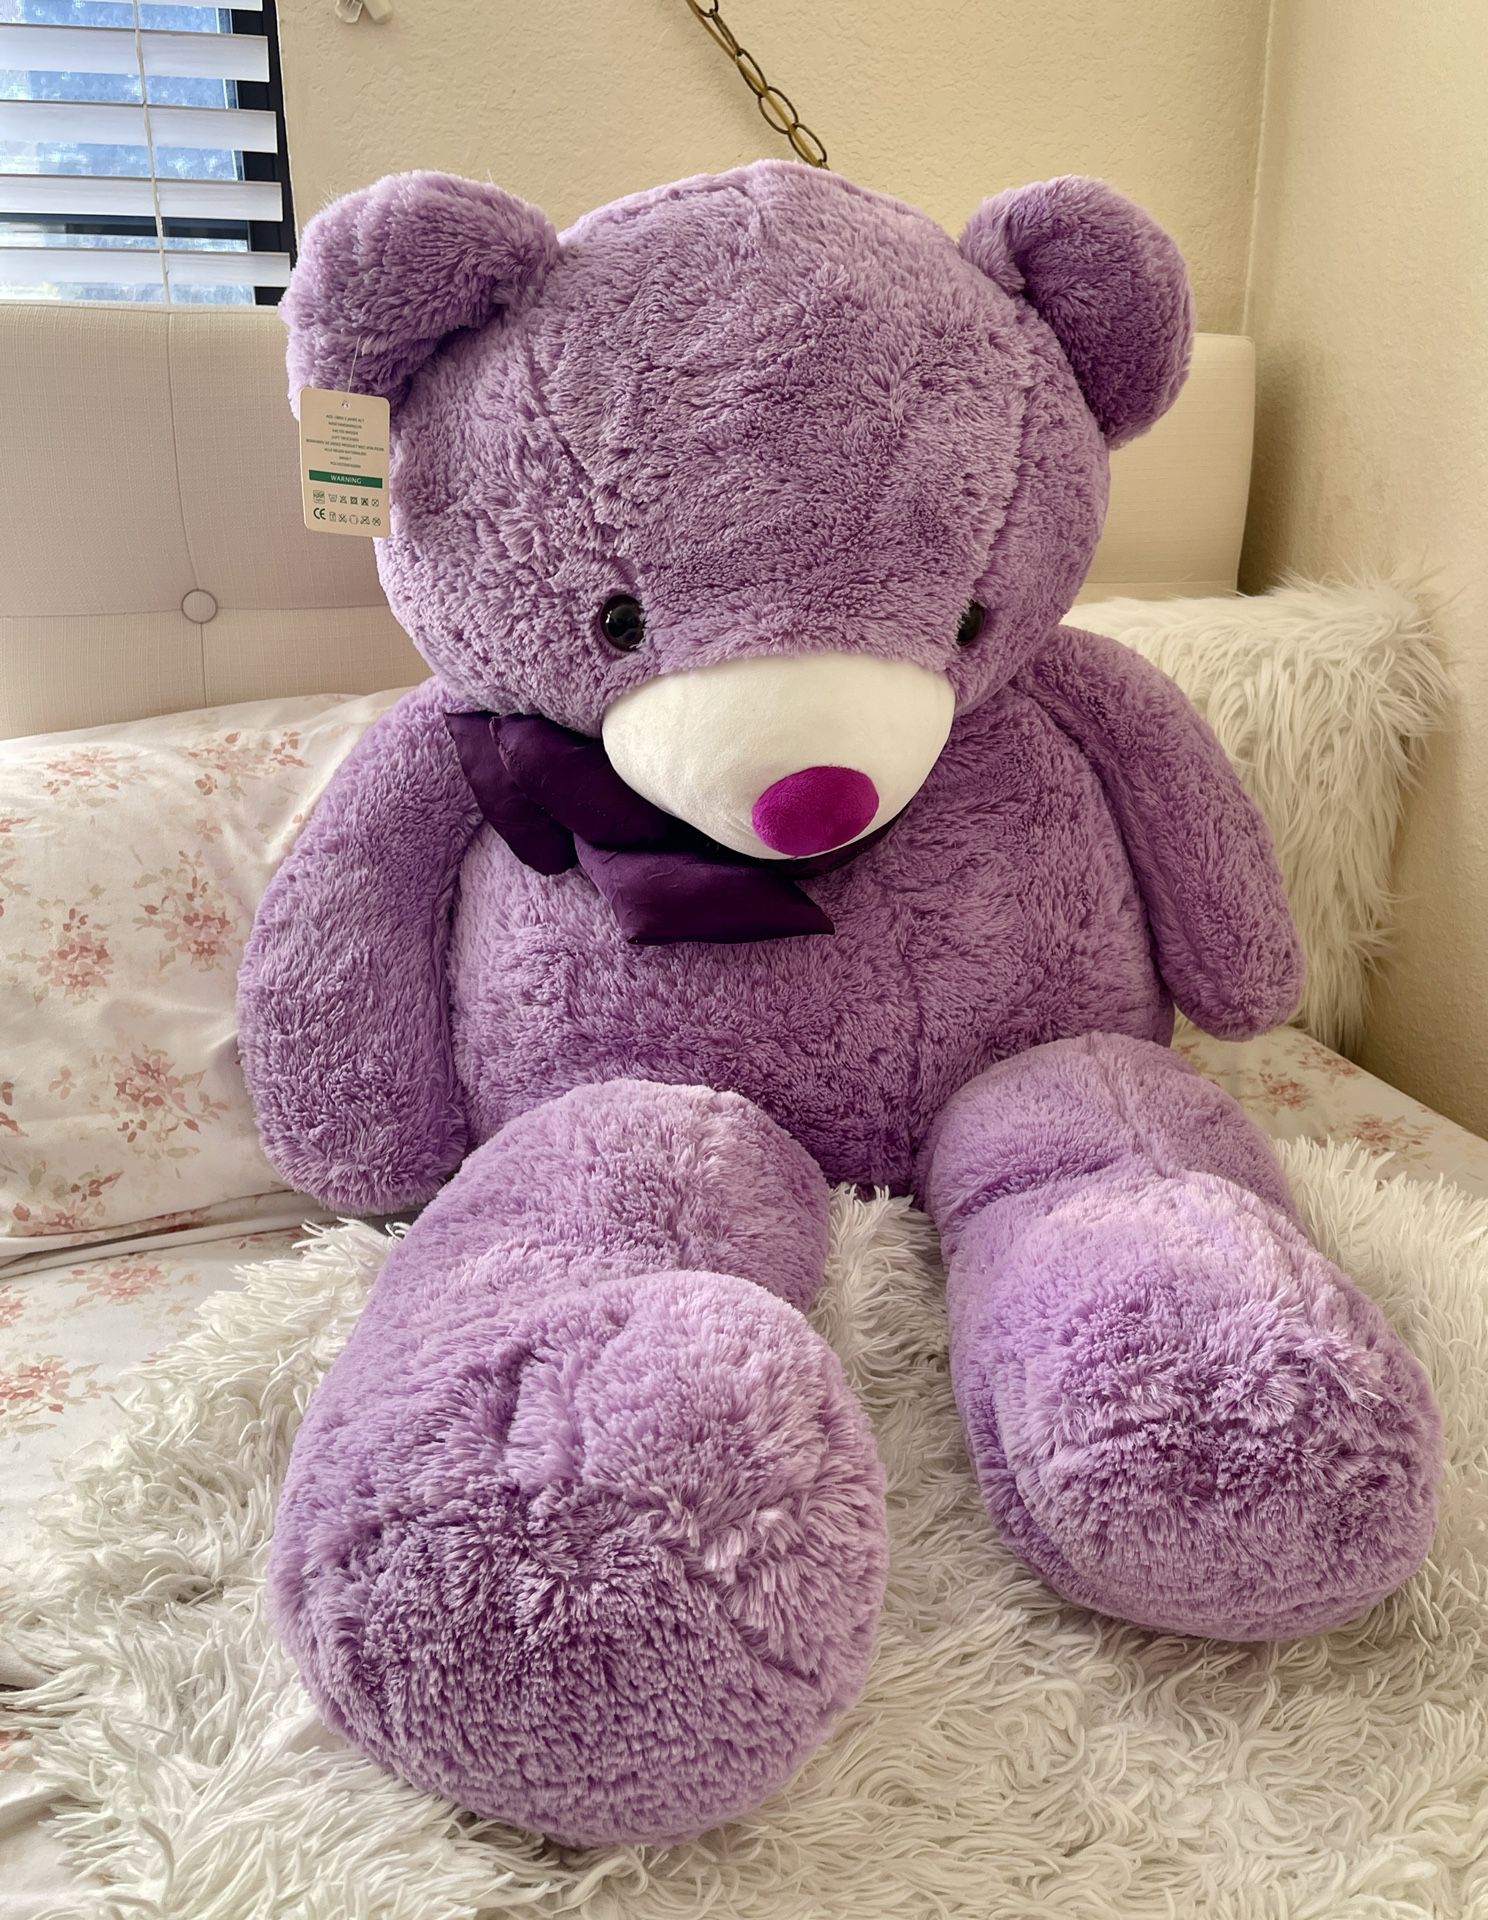 Morismos Giant Teddy Bear